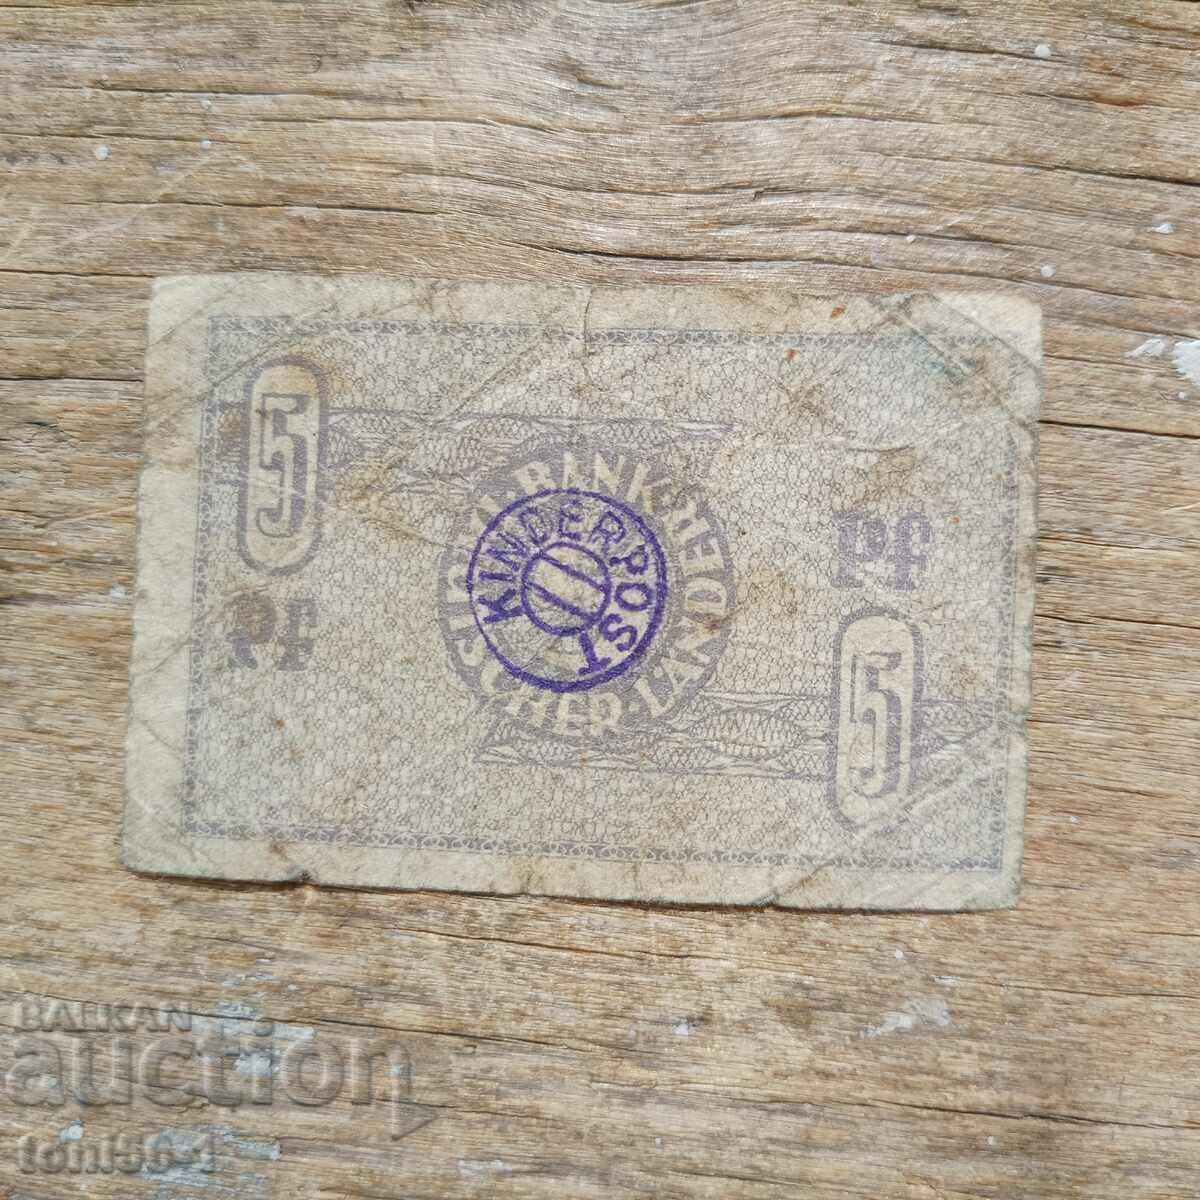 Germania - Deutsche Laender 5 Pfennig 1948